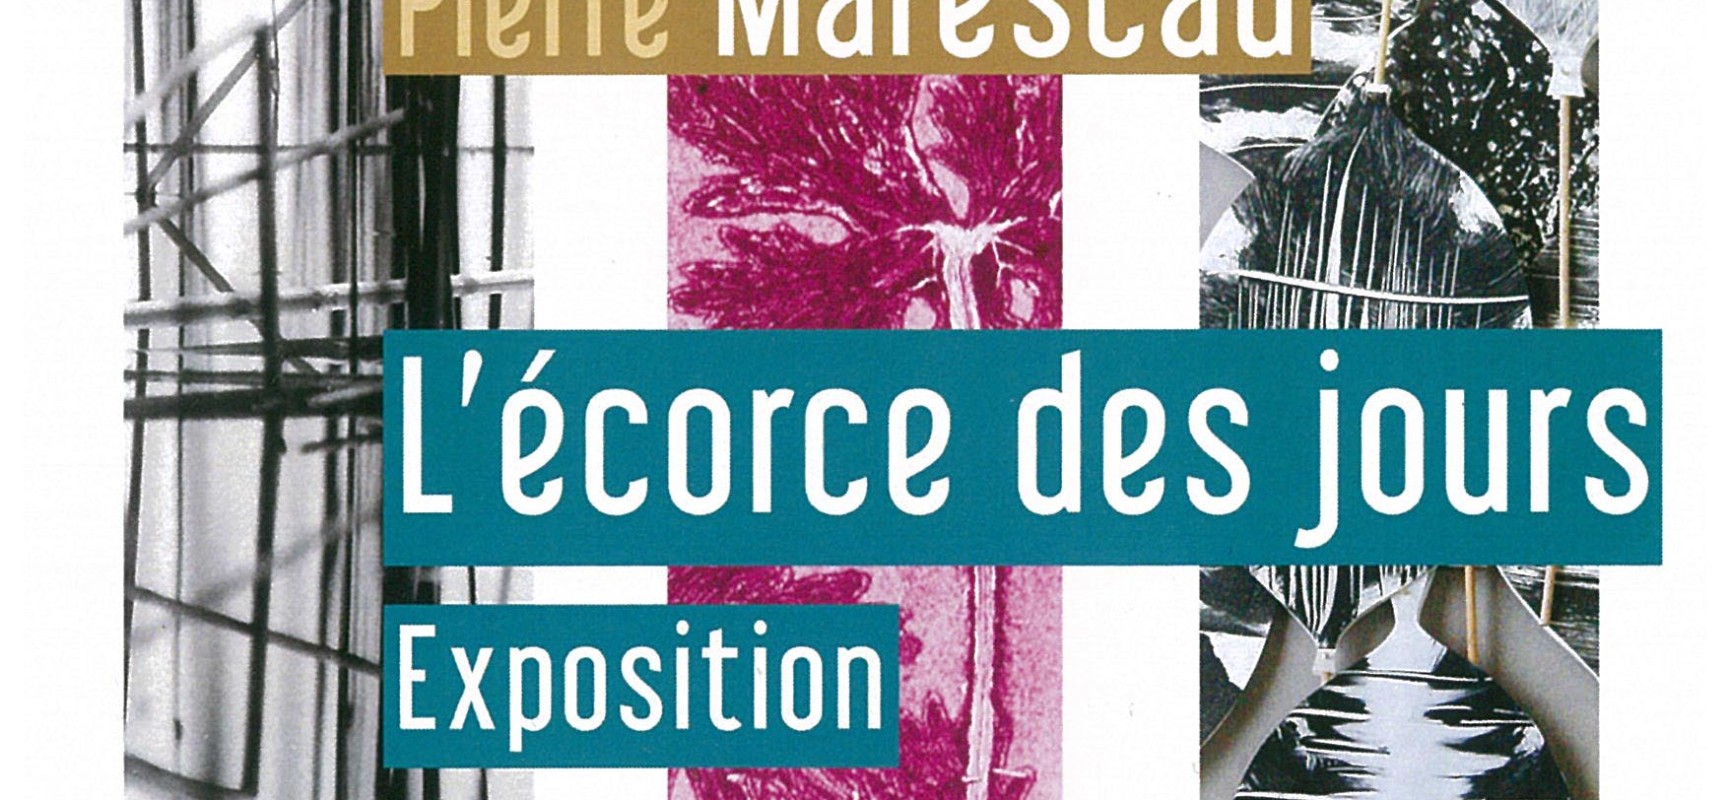 Vernissage de  l’Expo « L’écorce des jours », Jean-Claude Lemosquet, Irène Morgadinho et Pierre Marescau